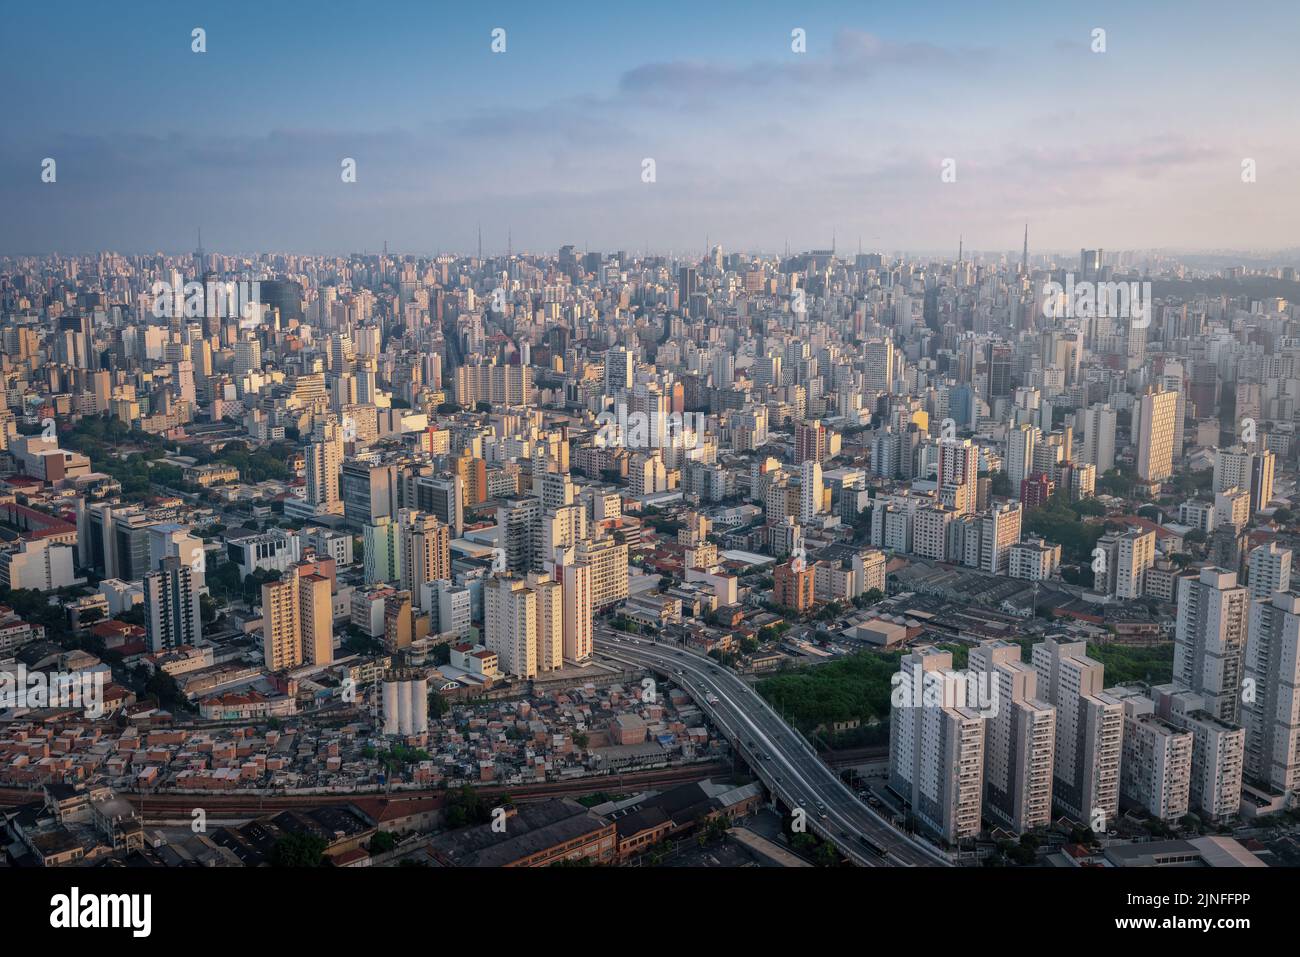 Vue aérienne de Sao Paulo et Eng Orlando Murgel Viaduct - Sao Paulo, Brésil Banque D'Images